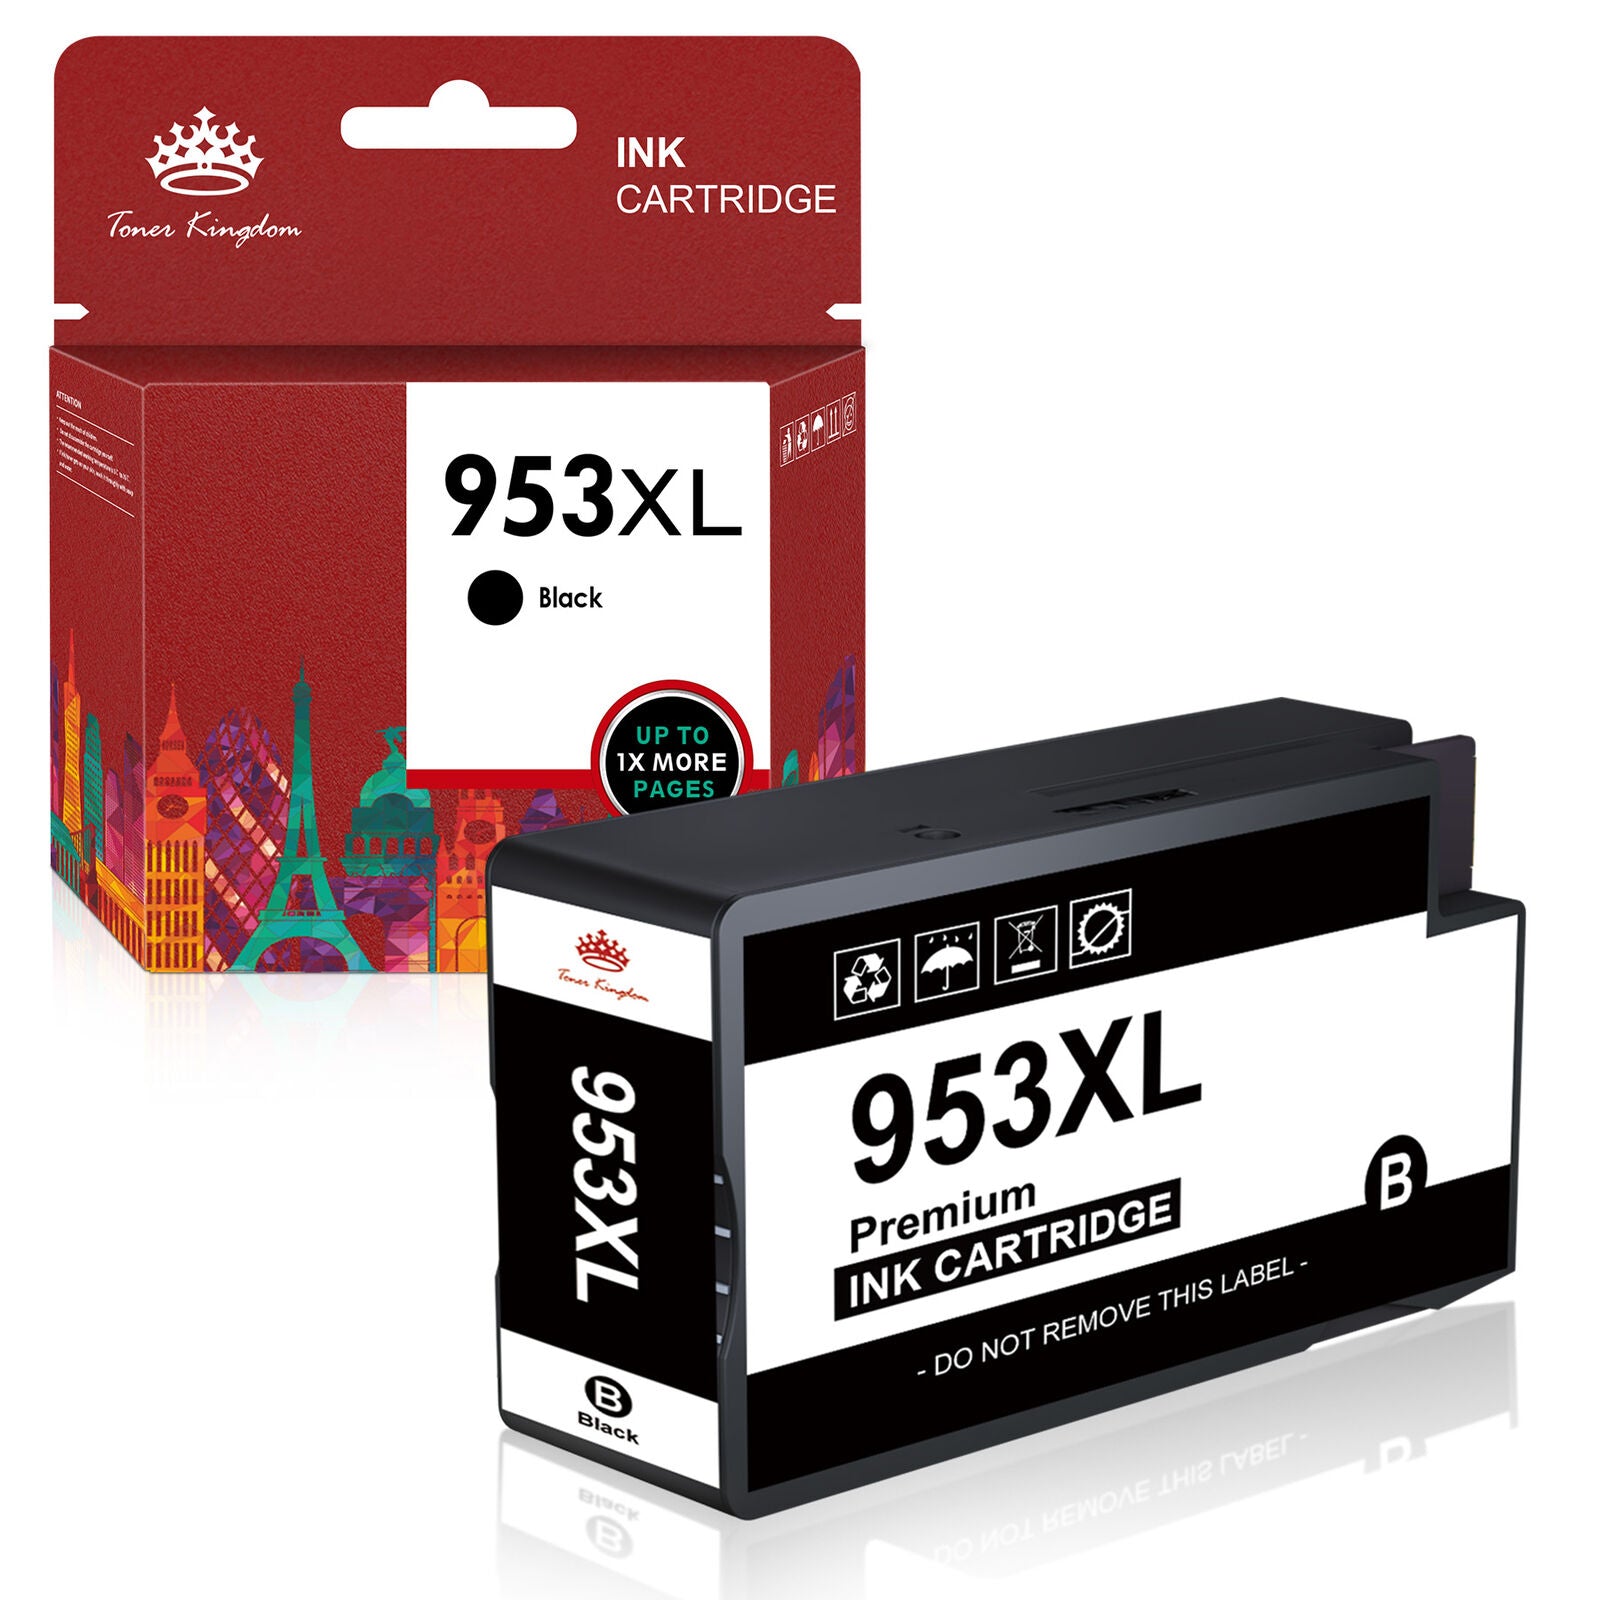 Cartouches d'encre compatibles G&G 953 XL HP 953XL 953 XL (5 Multipack)  pour HP